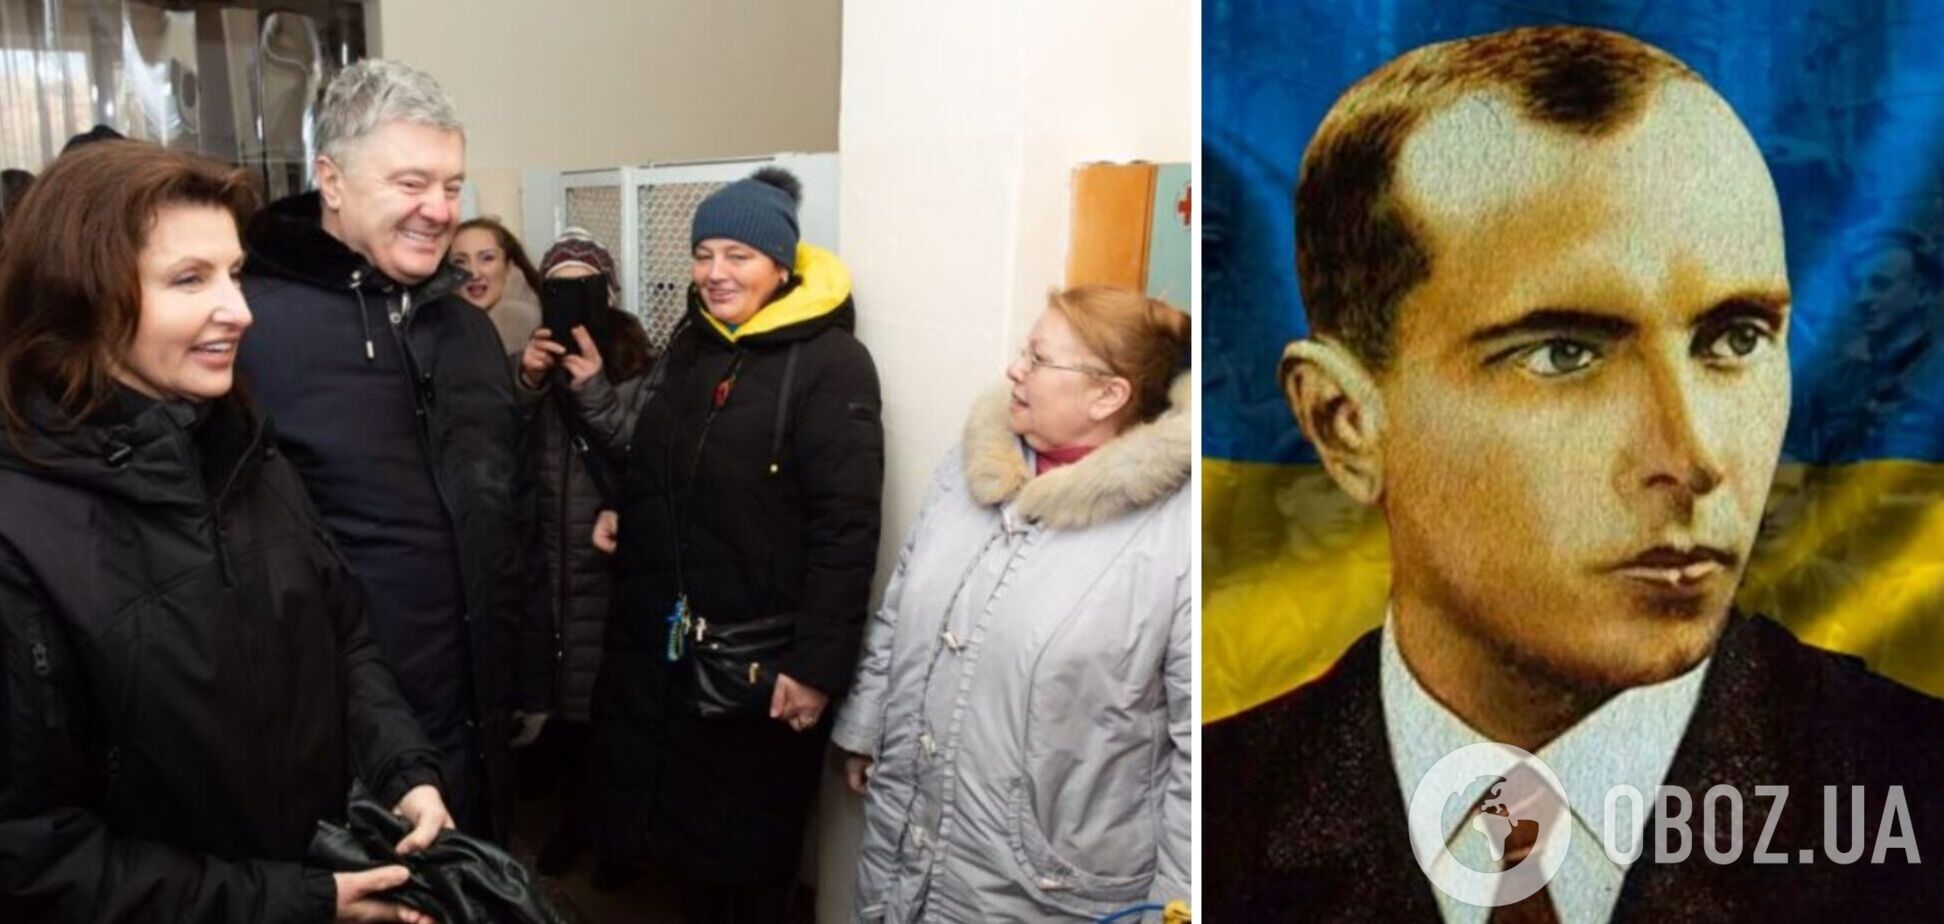 'Усе, що треба знати про українську єдність': Порошенко у Херсоні заспівав 'Батько наш Бандера' з волонтерами